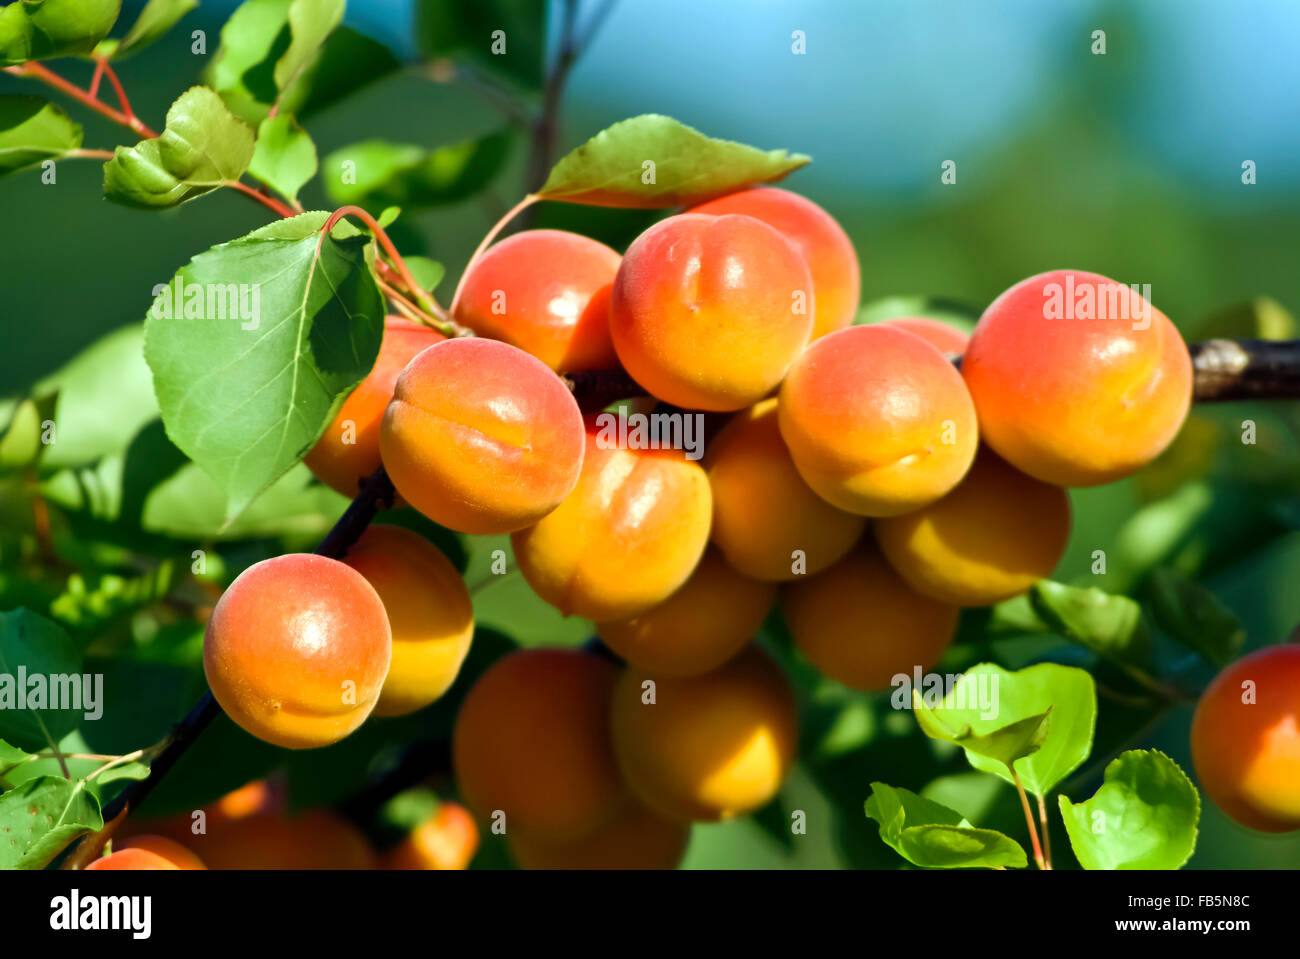 Arbre aux fruits abricots détails Wachau Autriche europe Banque D'Images